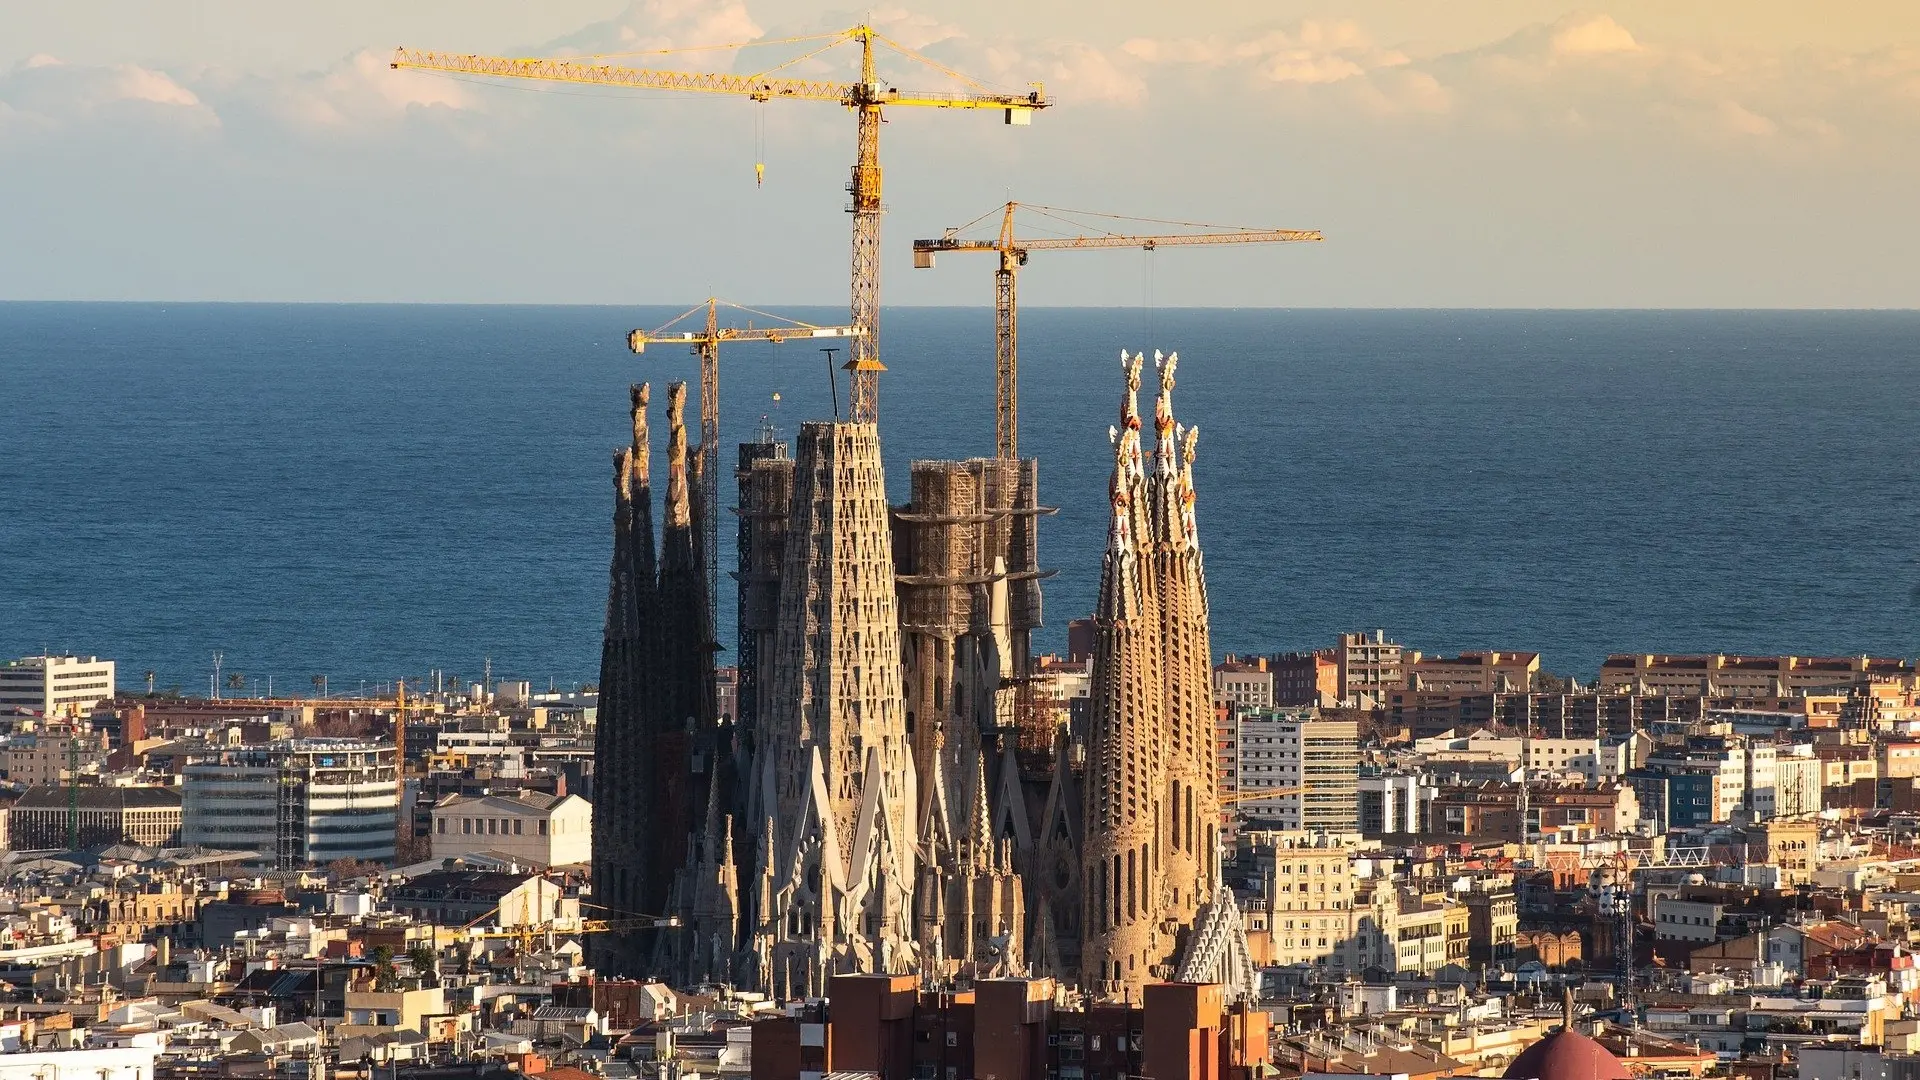 The Sagrada Familia still in progress.